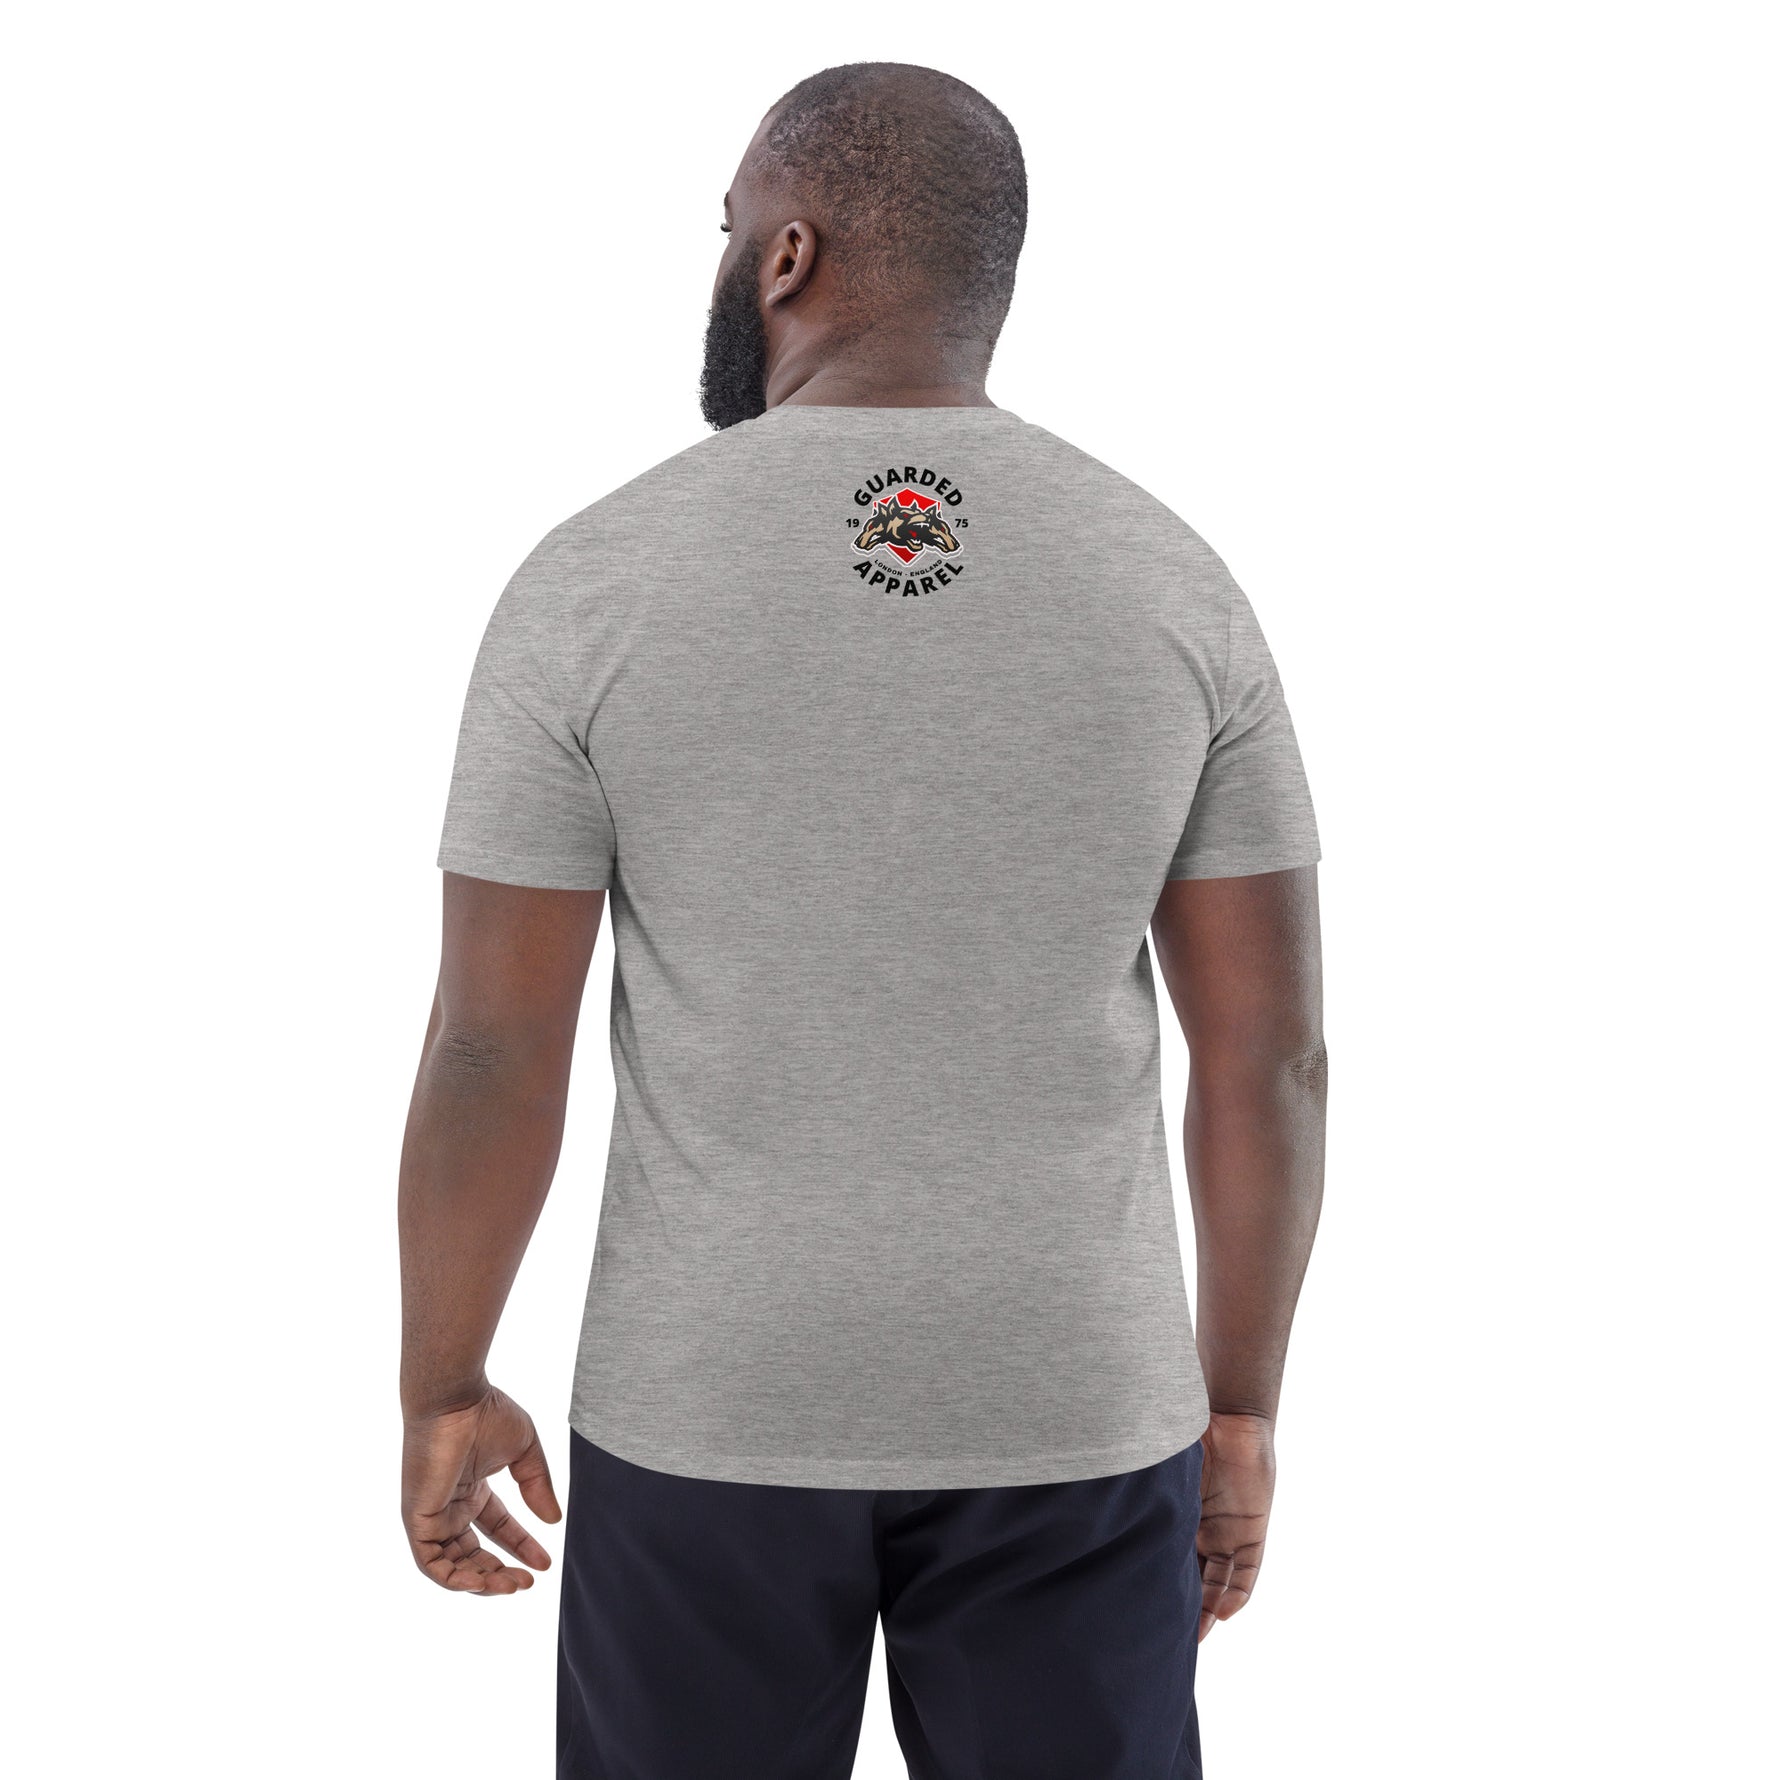 Men's Cotton T-Shirt